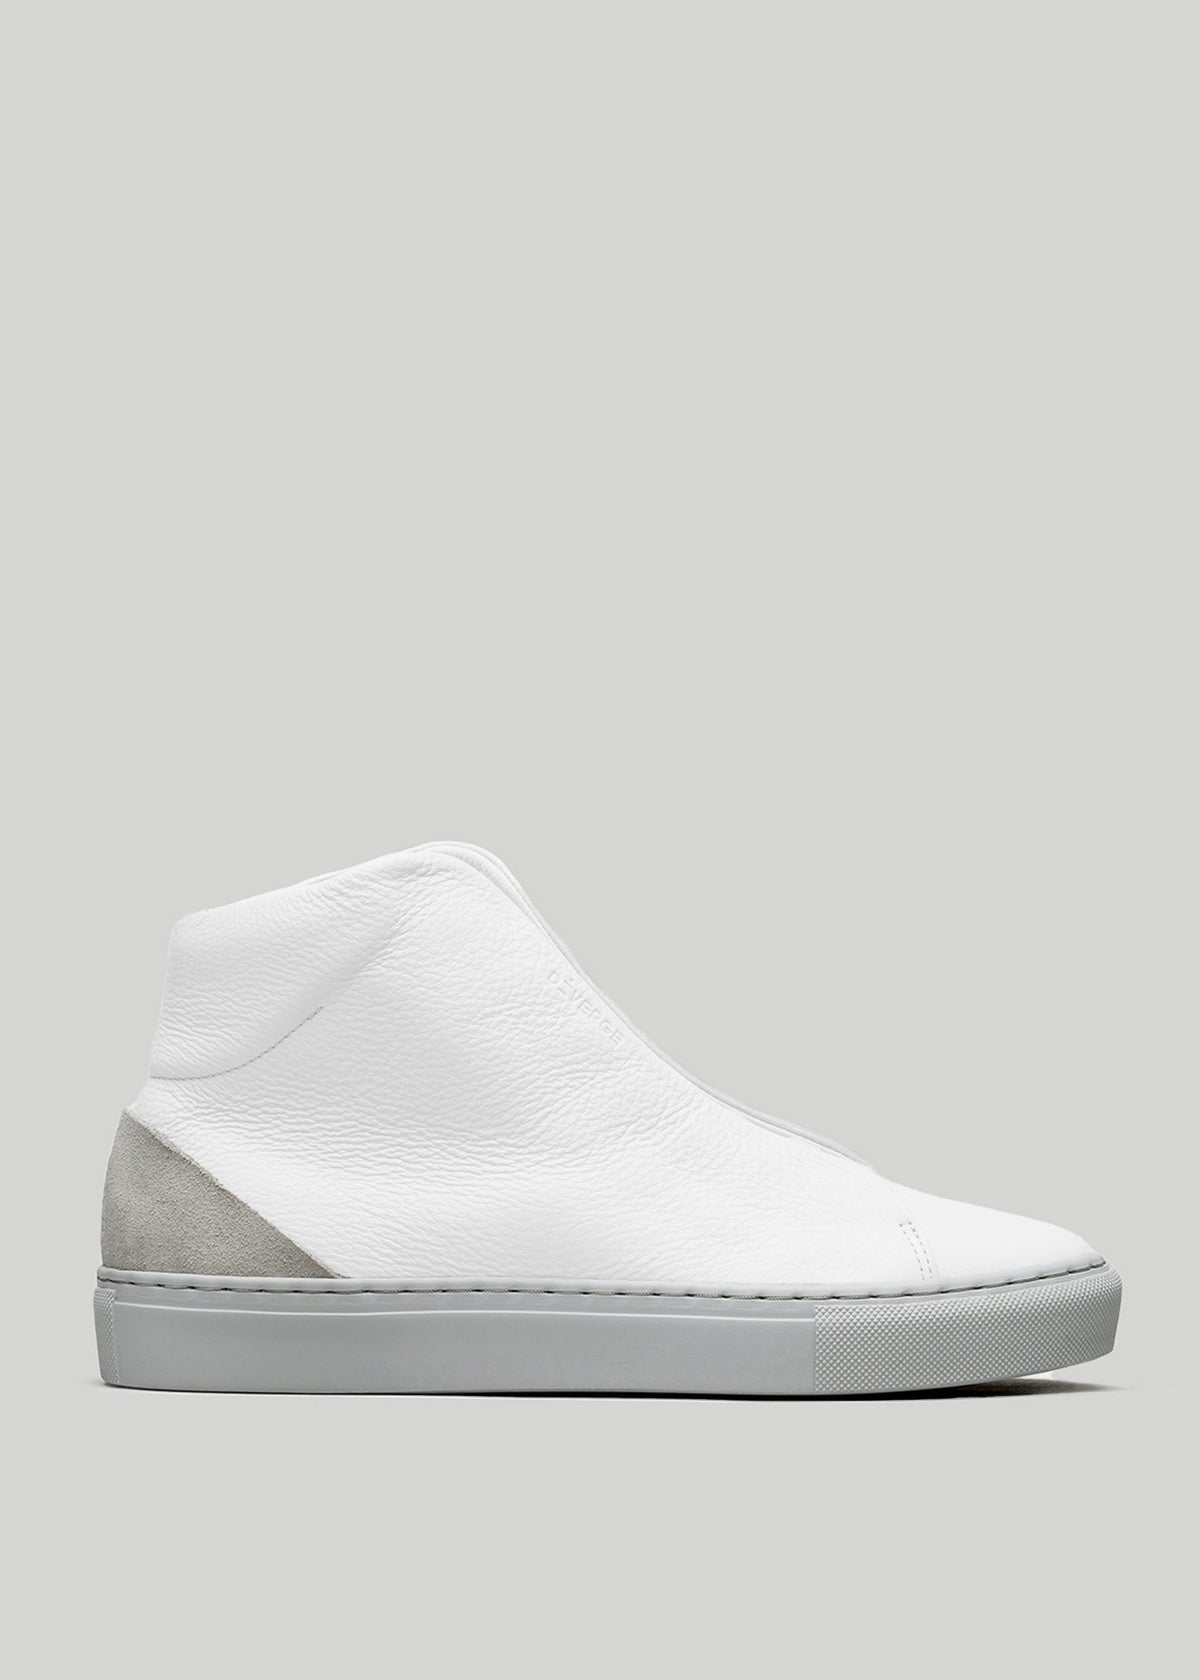 V39 White W/ Grey High-Top-Sneaker mit strukturiertem Obermaterial, grauer Wildleder-Fersenkappe und dicker weißer Gummisohle auf hellgrauem Hintergrund.